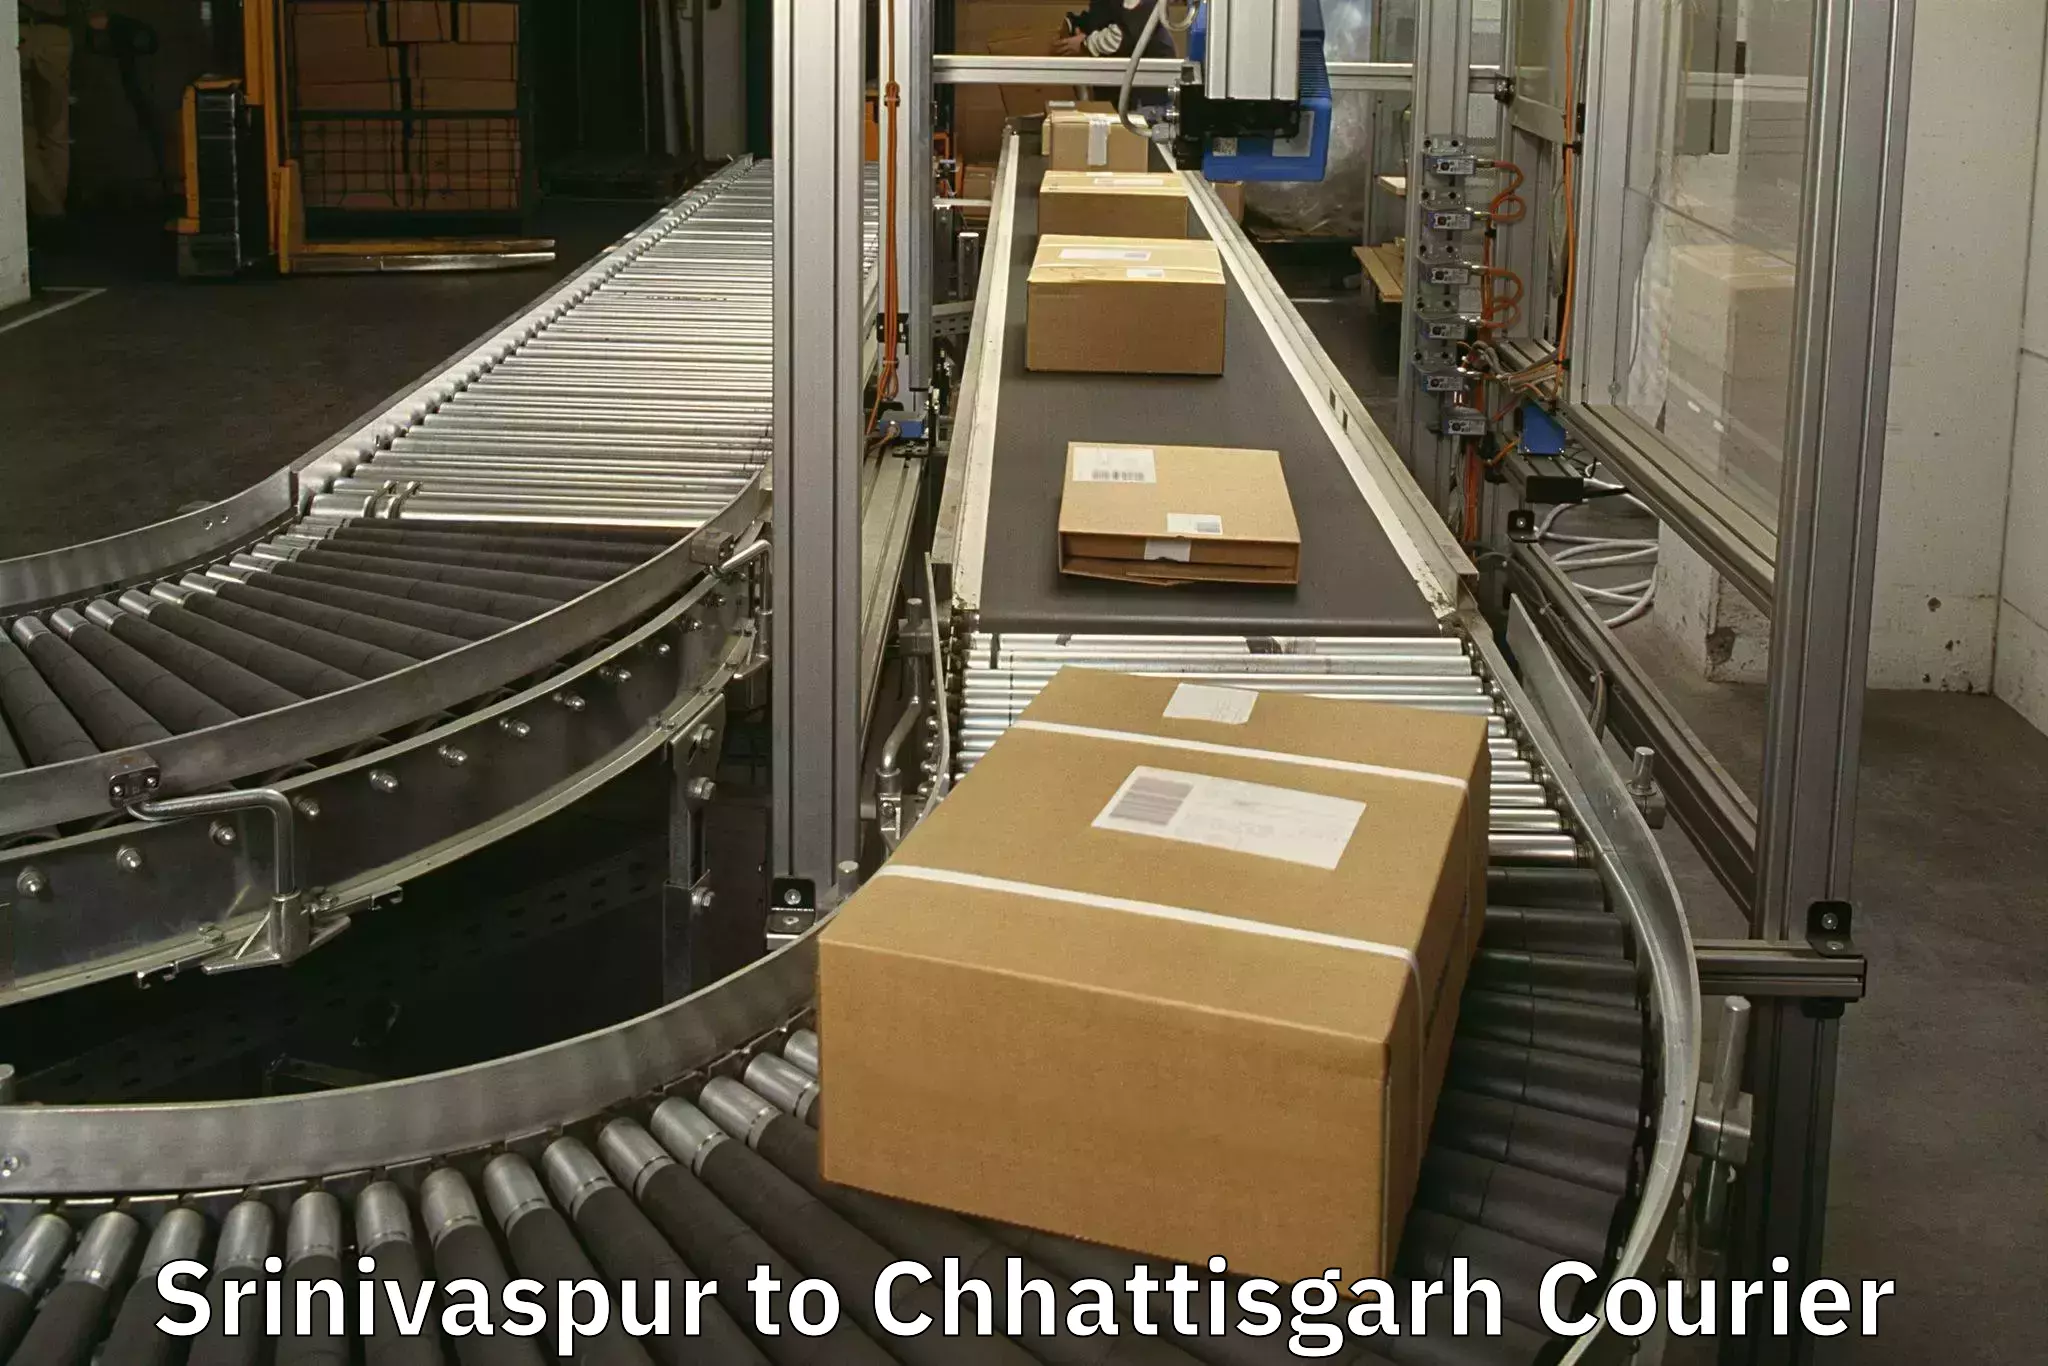 Door-to-door baggage service Srinivaspur to Raigarh